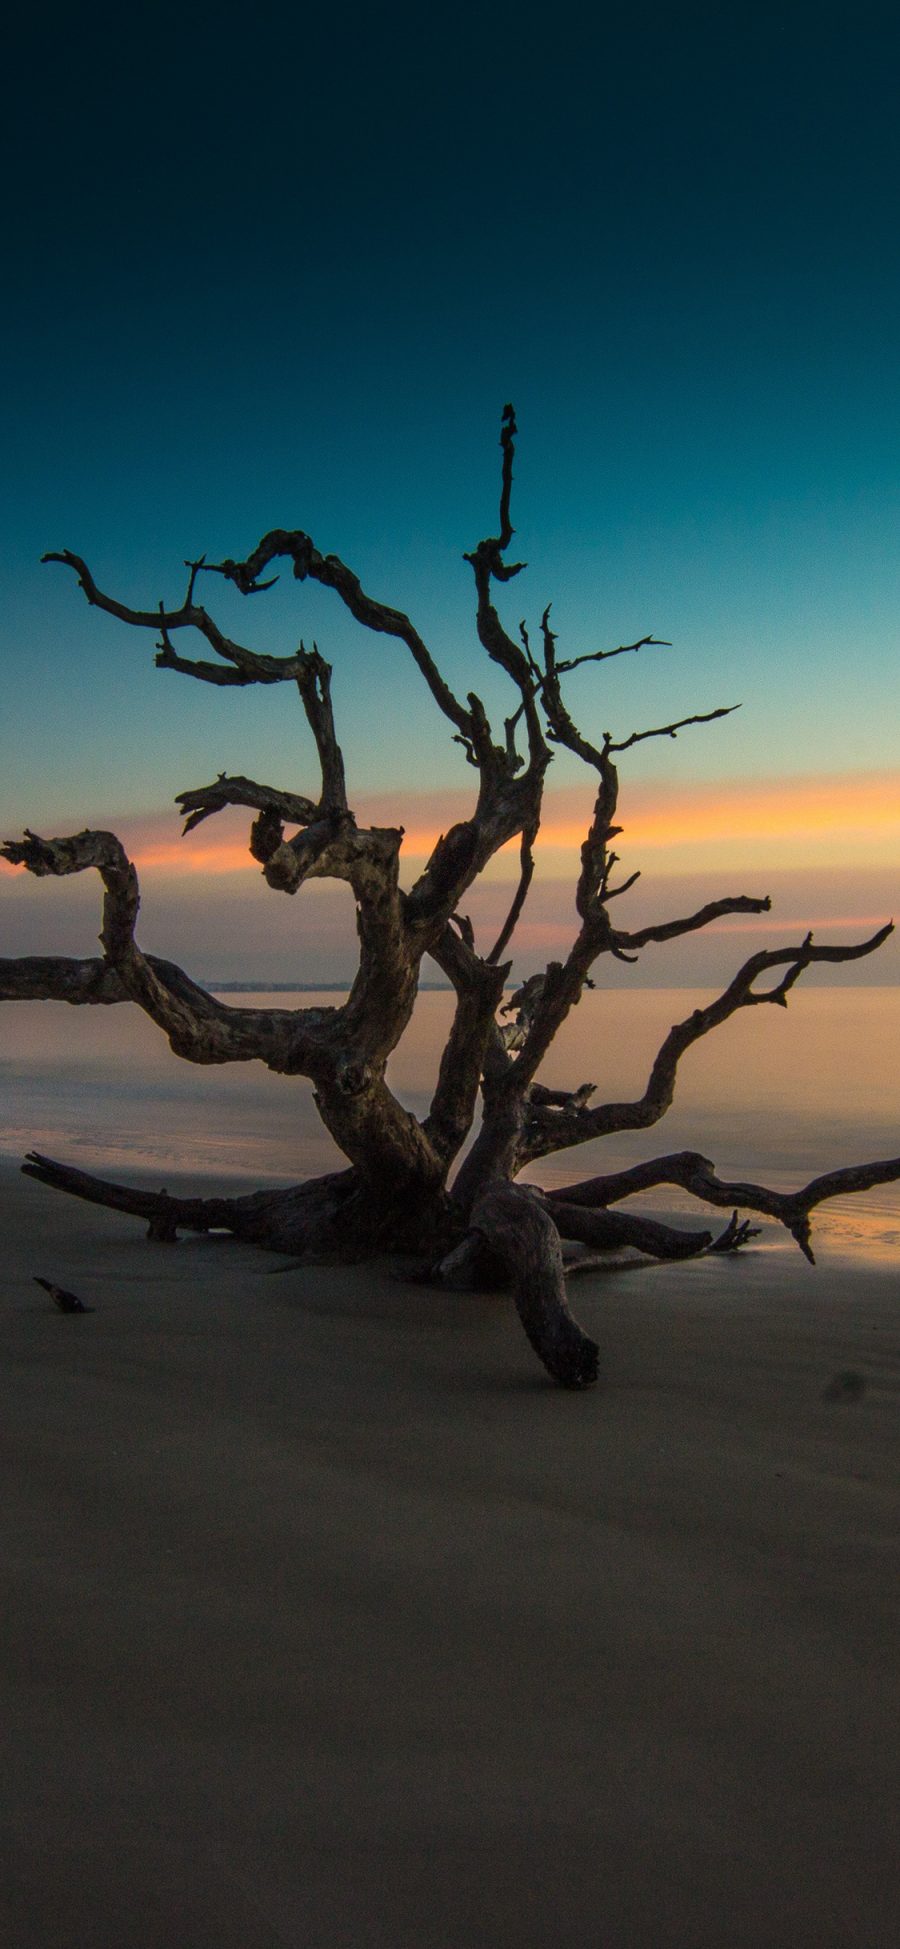 [2436×1125]海滩 夕阳 枯木 自然美景 苹果手机壁纸图片